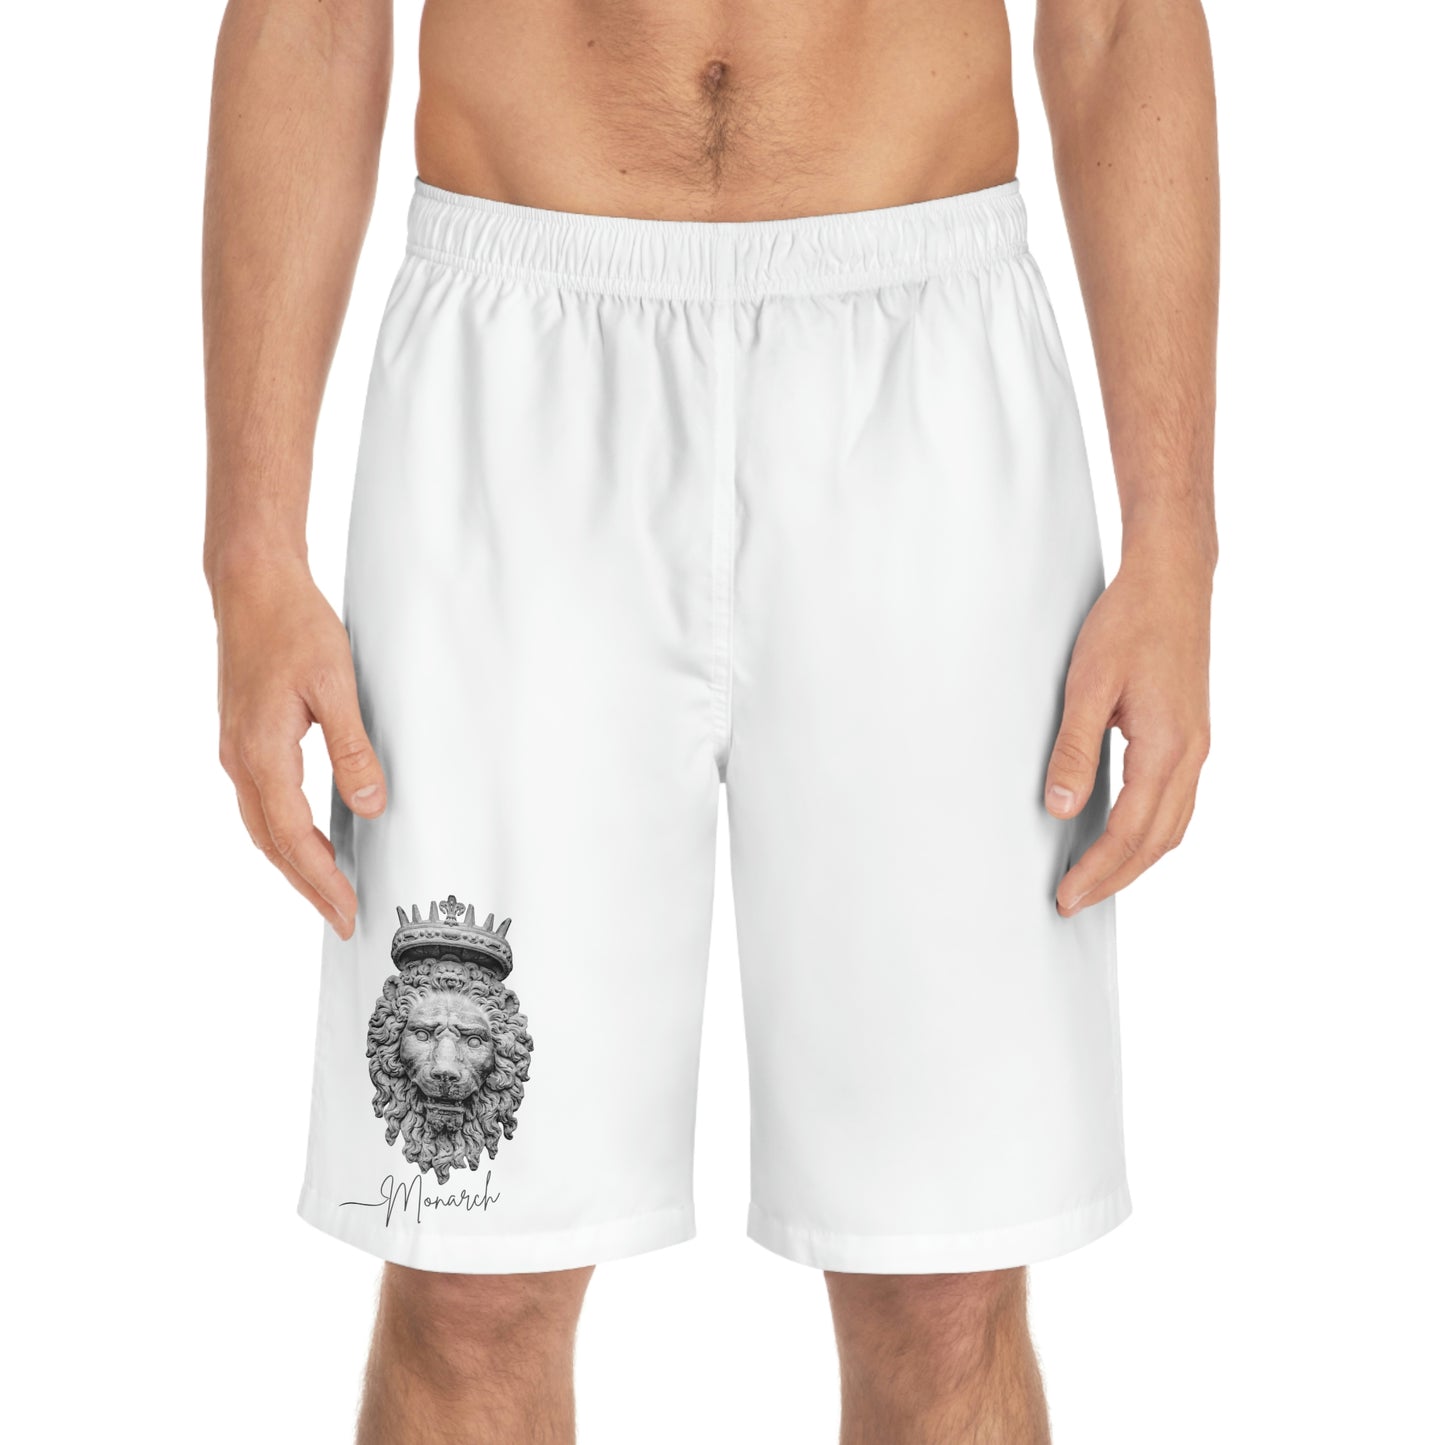 Men's Shorts "Monarch"